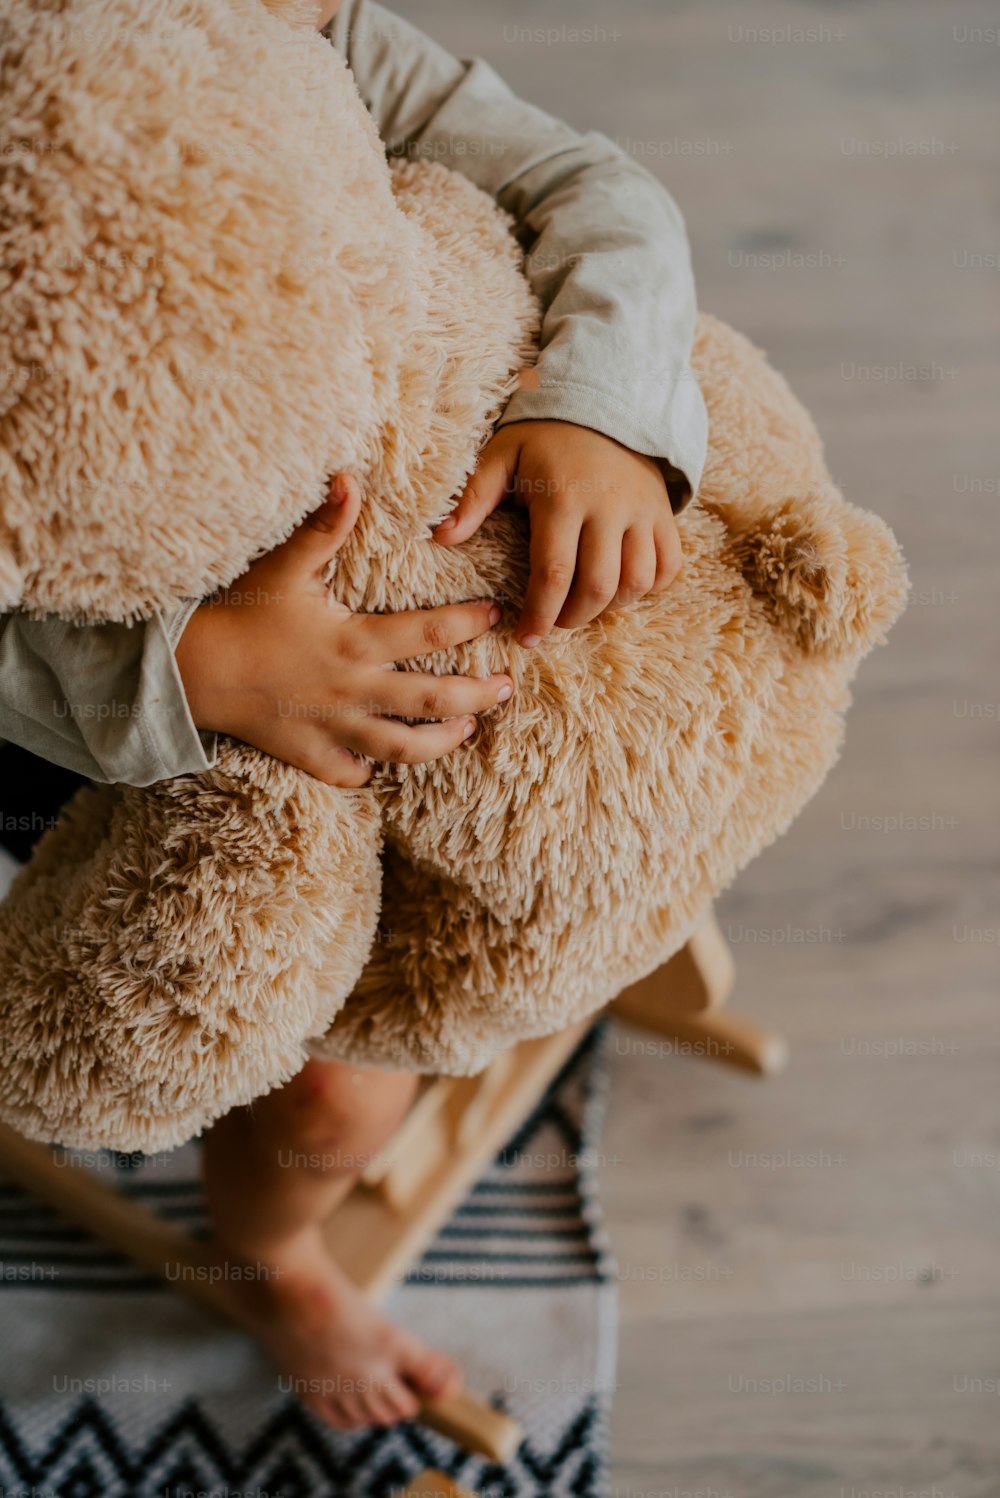 Ein Kind, das einen Teddybären auf einem Teppich hält